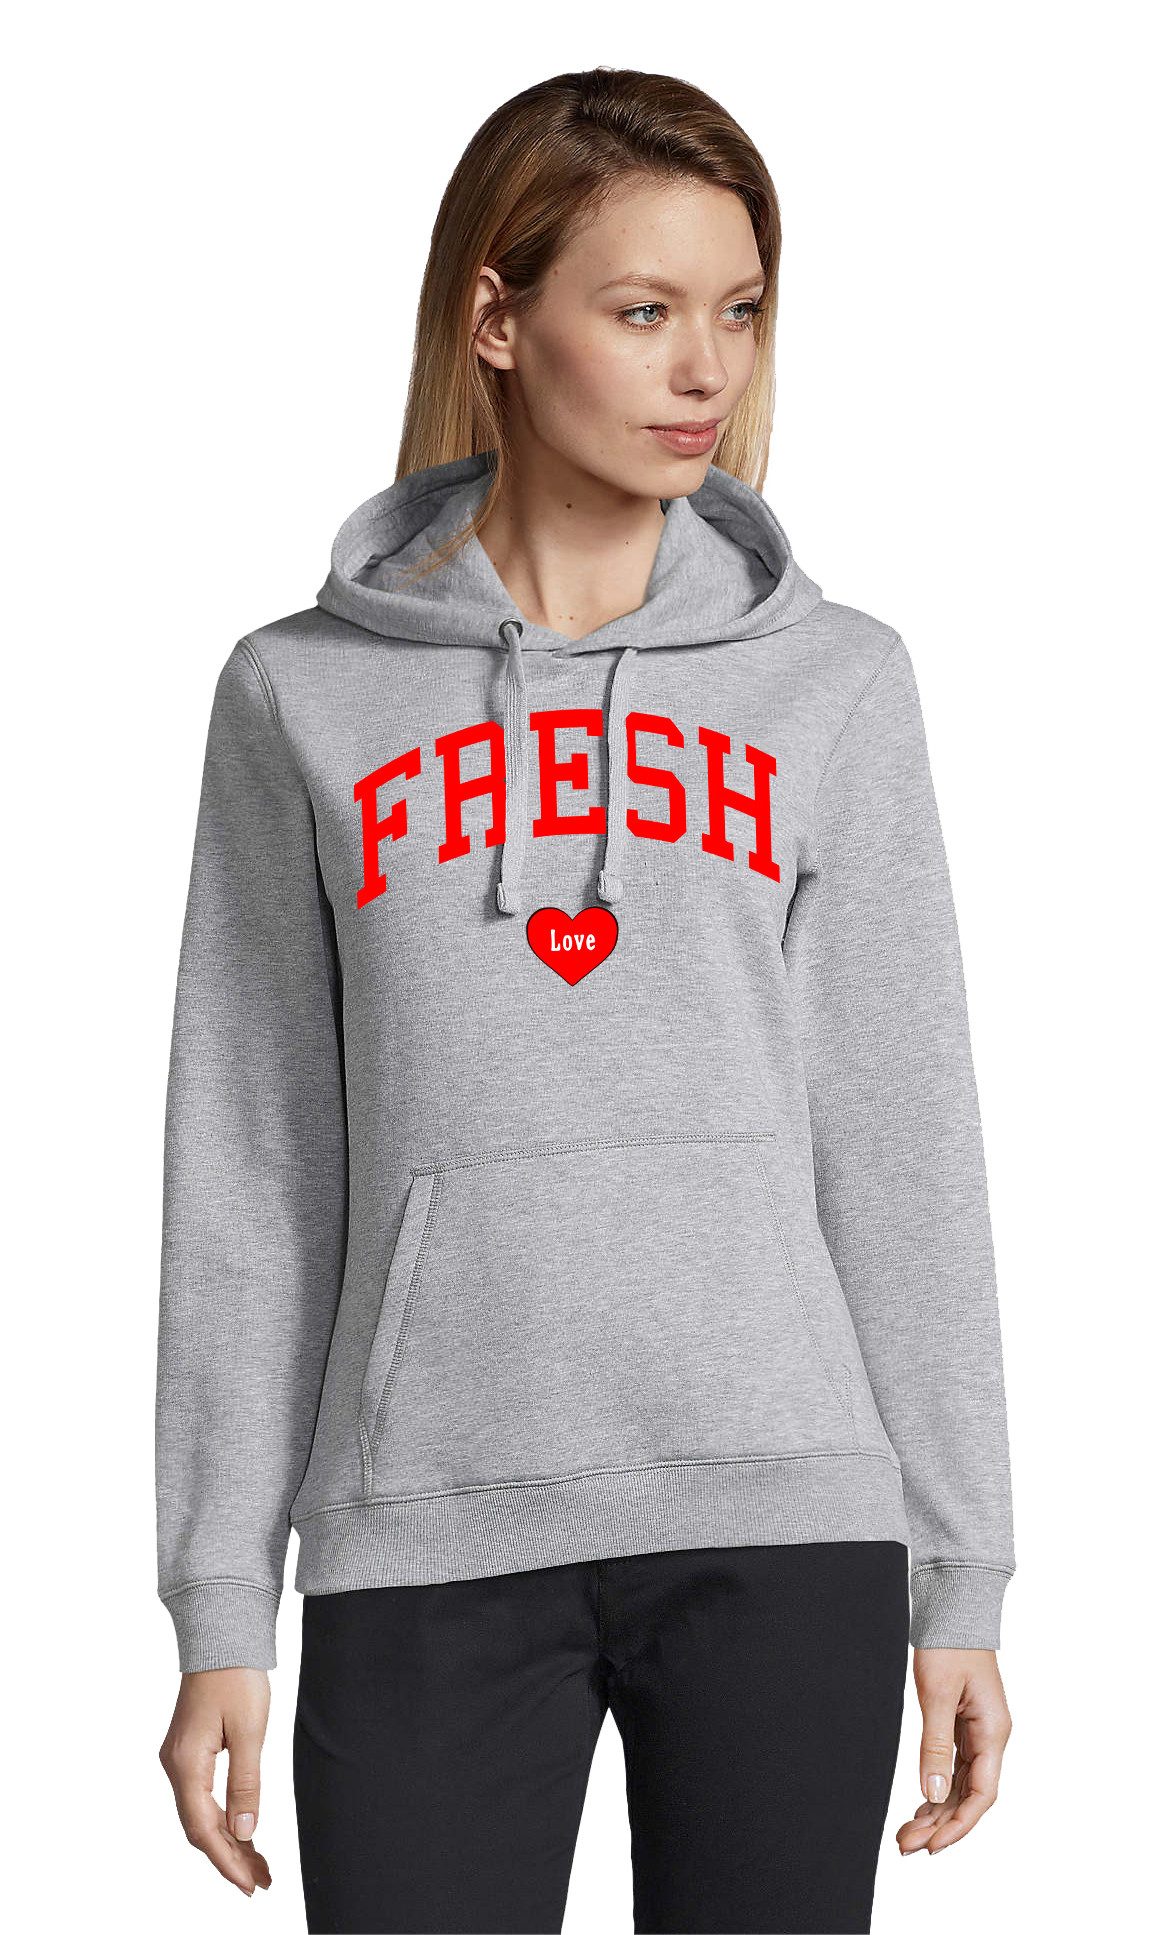 Blondie & Brownie Hoodie Unisex Damen Fresh Love Hip Hop Casual Print Sweatshirt mit Kapuze